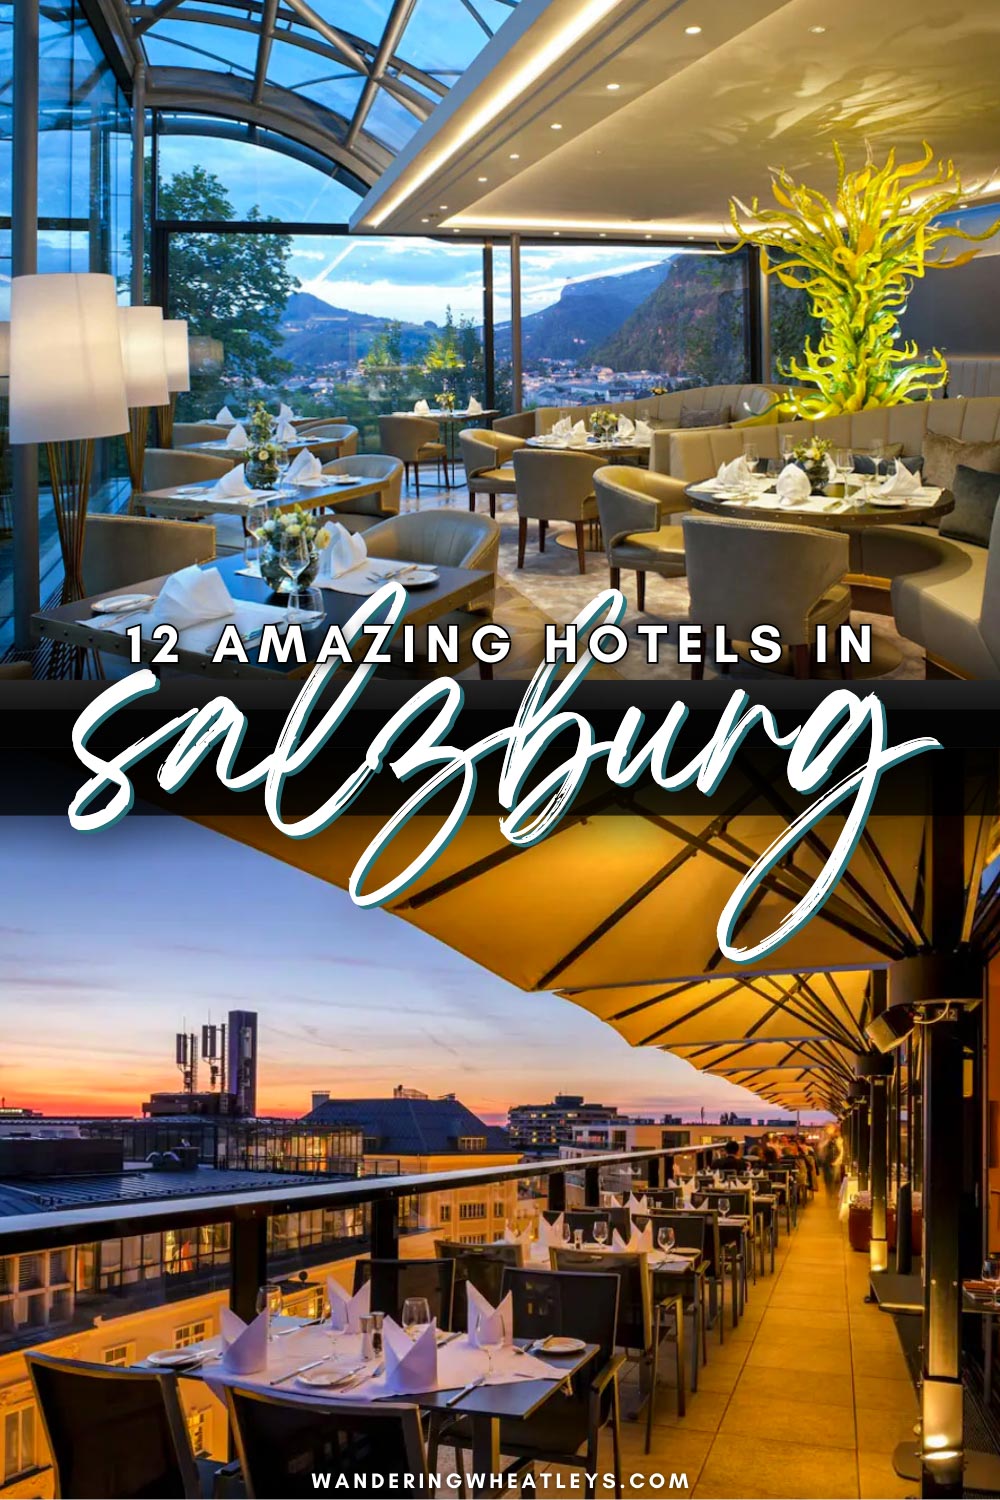 The Best Hotels in Salzburg